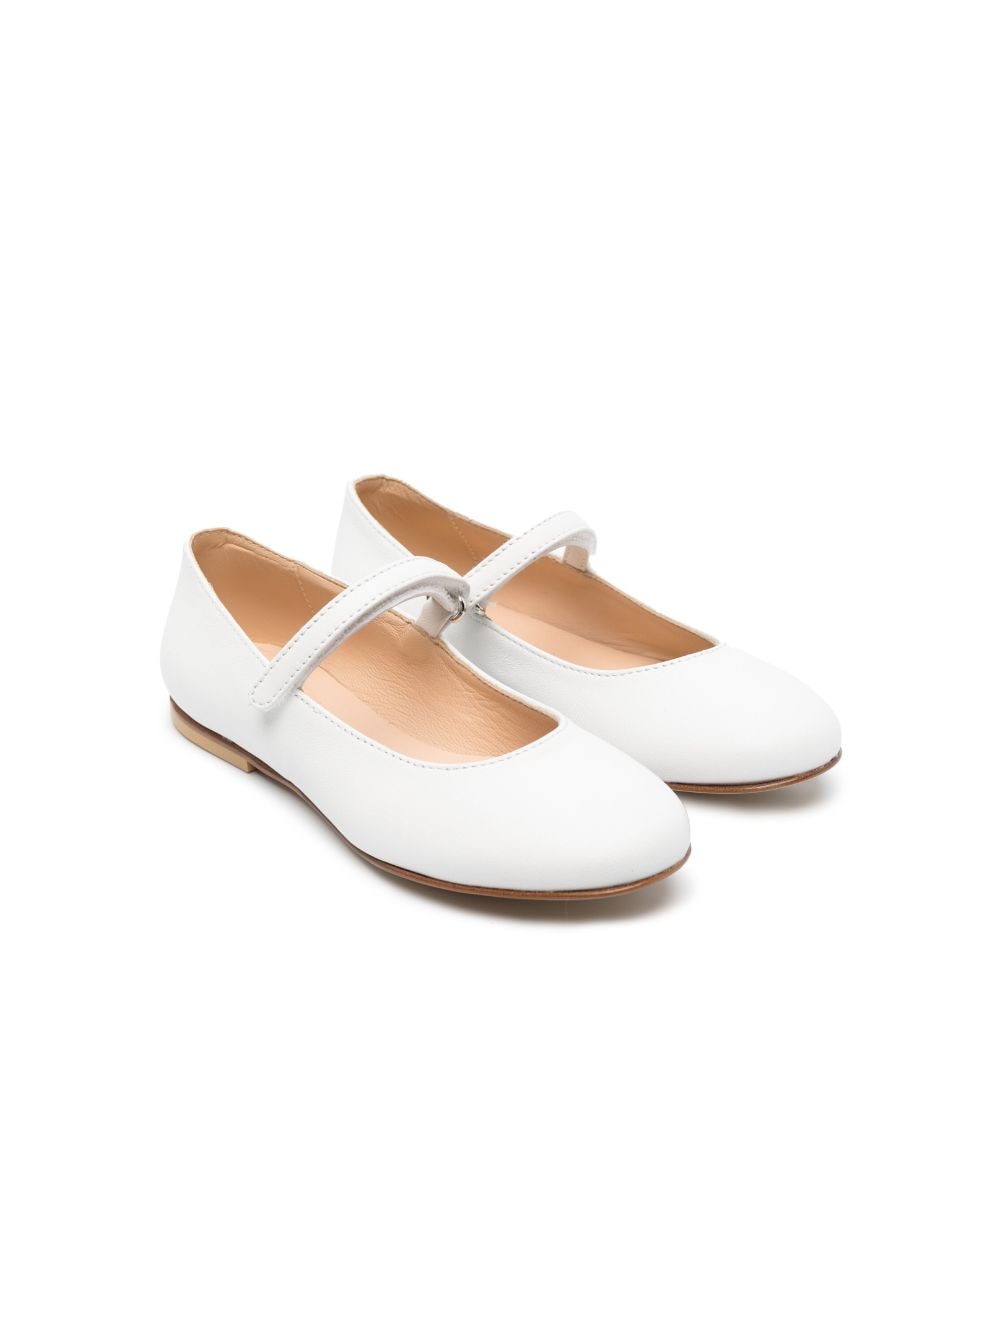 Andrea Montelpare leather ballerina shoes - White von Andrea Montelpare